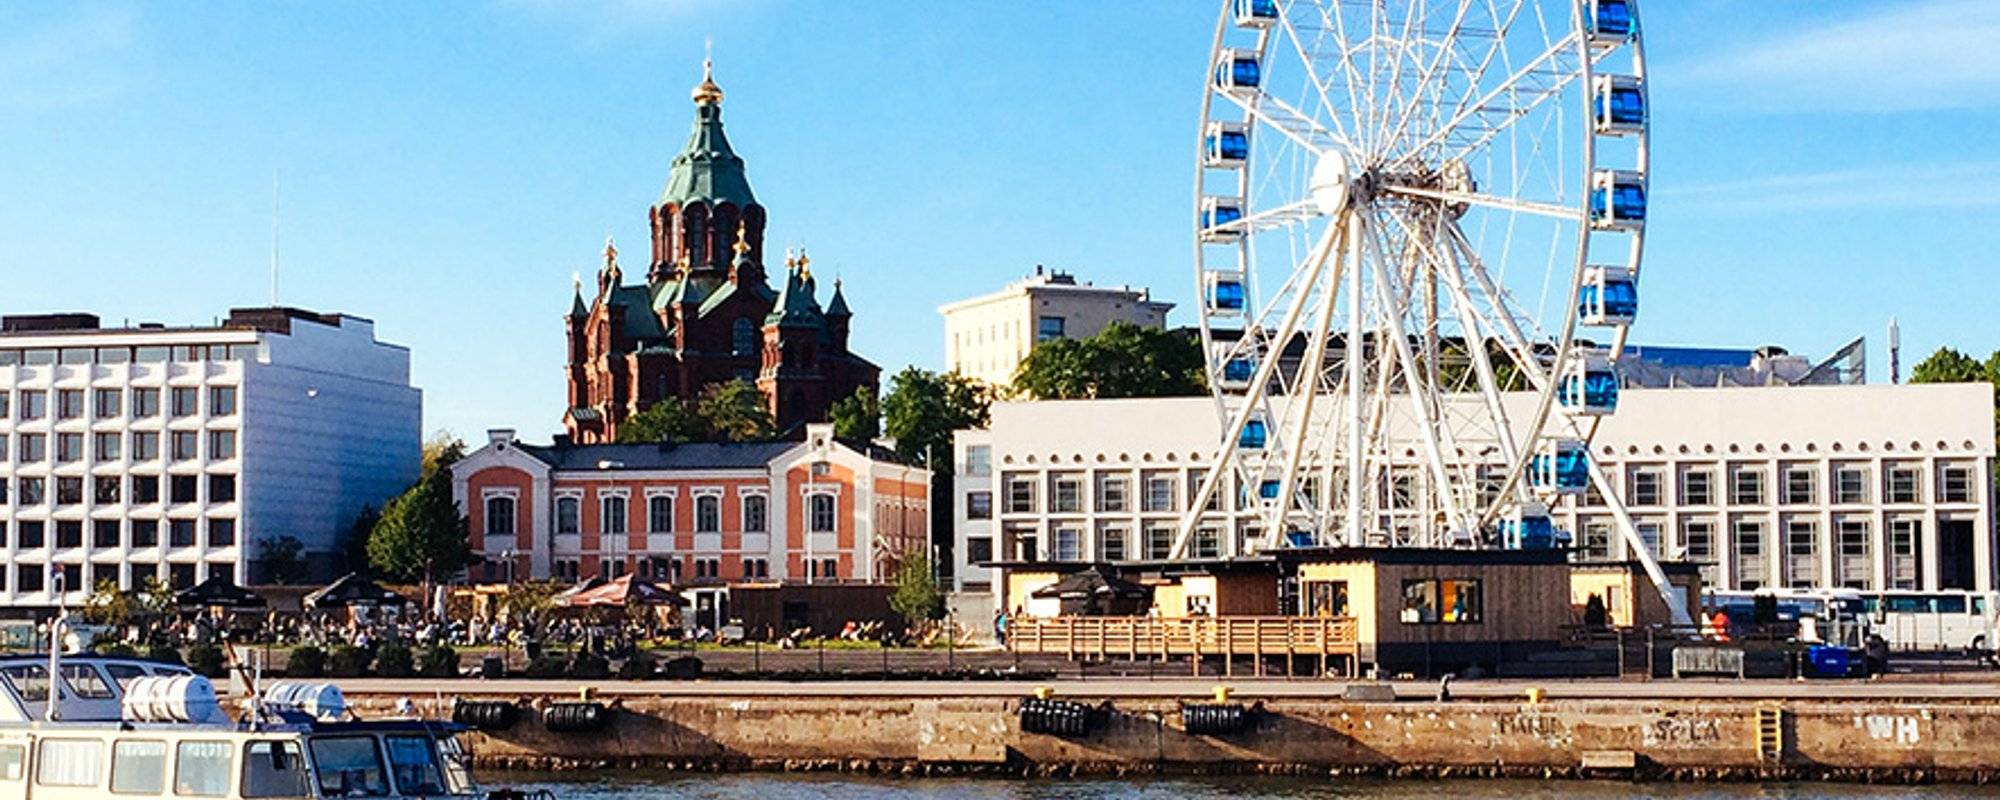 Exploring Finland - Walking Around Helsinki